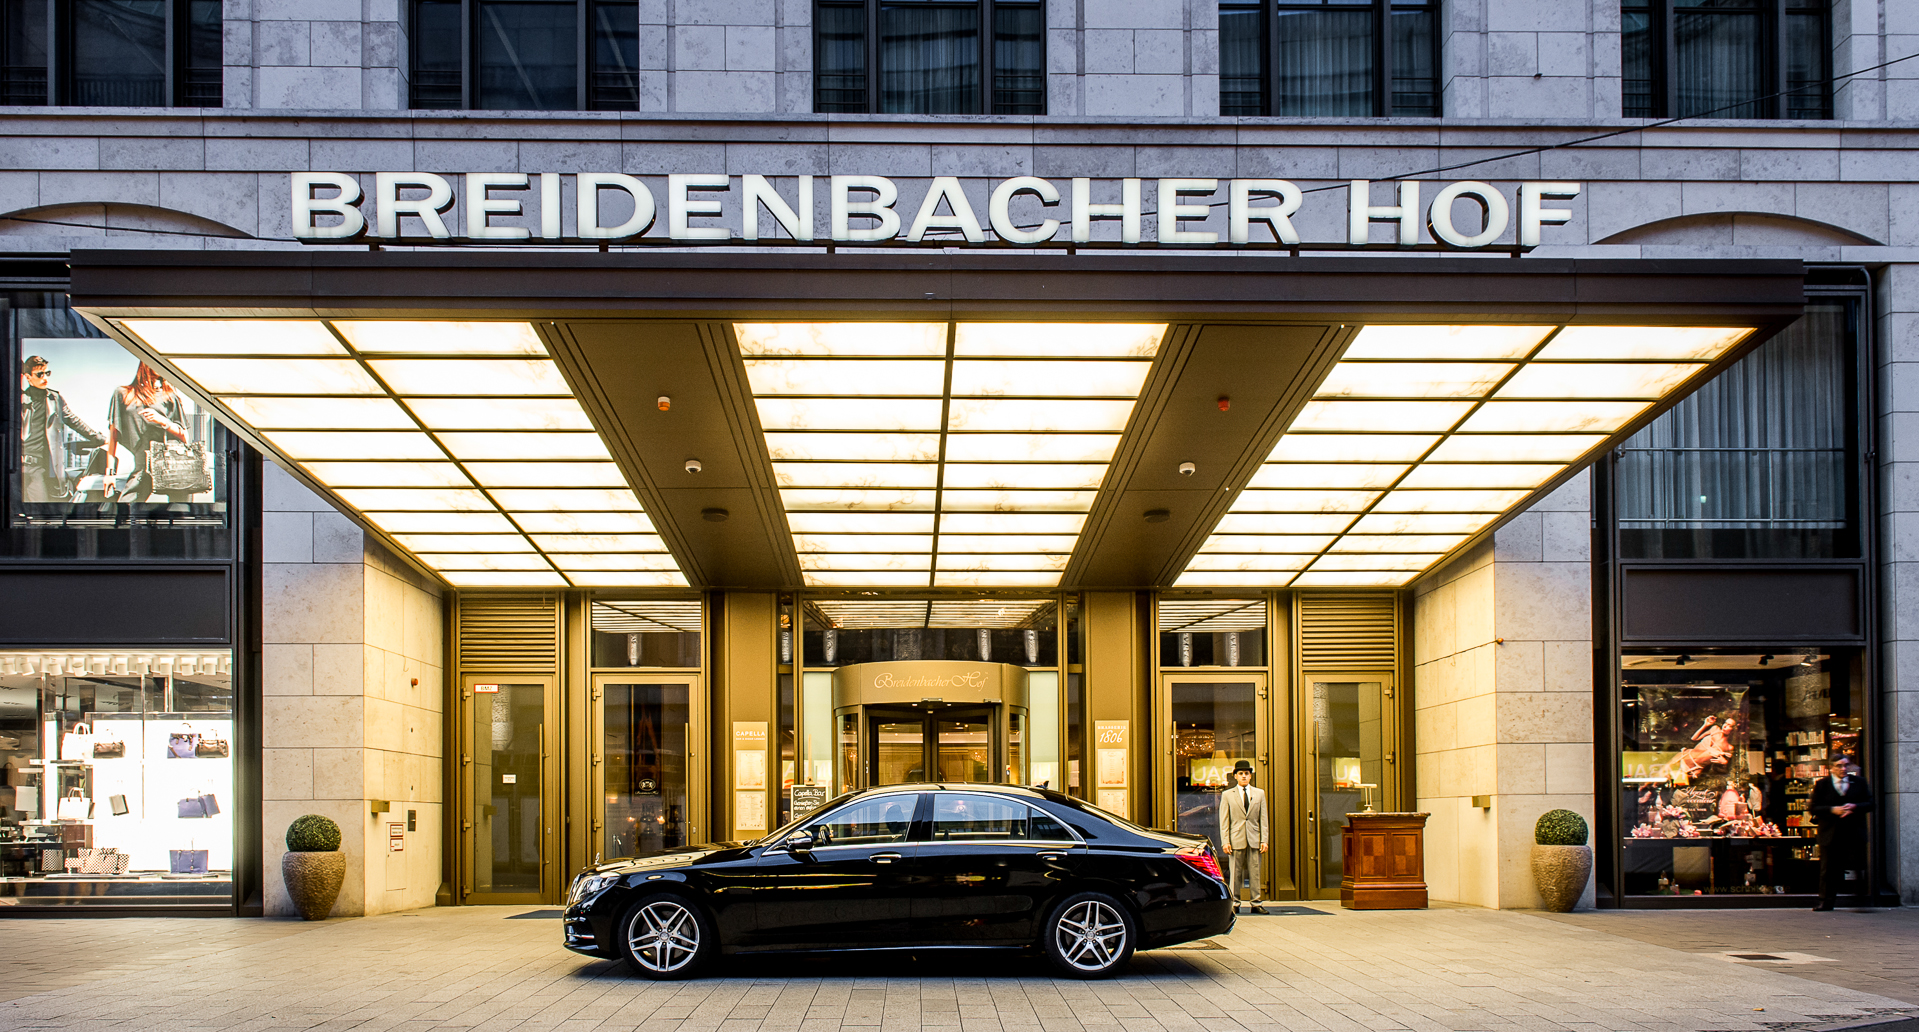 Capella Breidenbacher Hof, , Capella Breidenbacher Hof in Düsseldorf und Excelsior Hotel Ernst in Köln ...